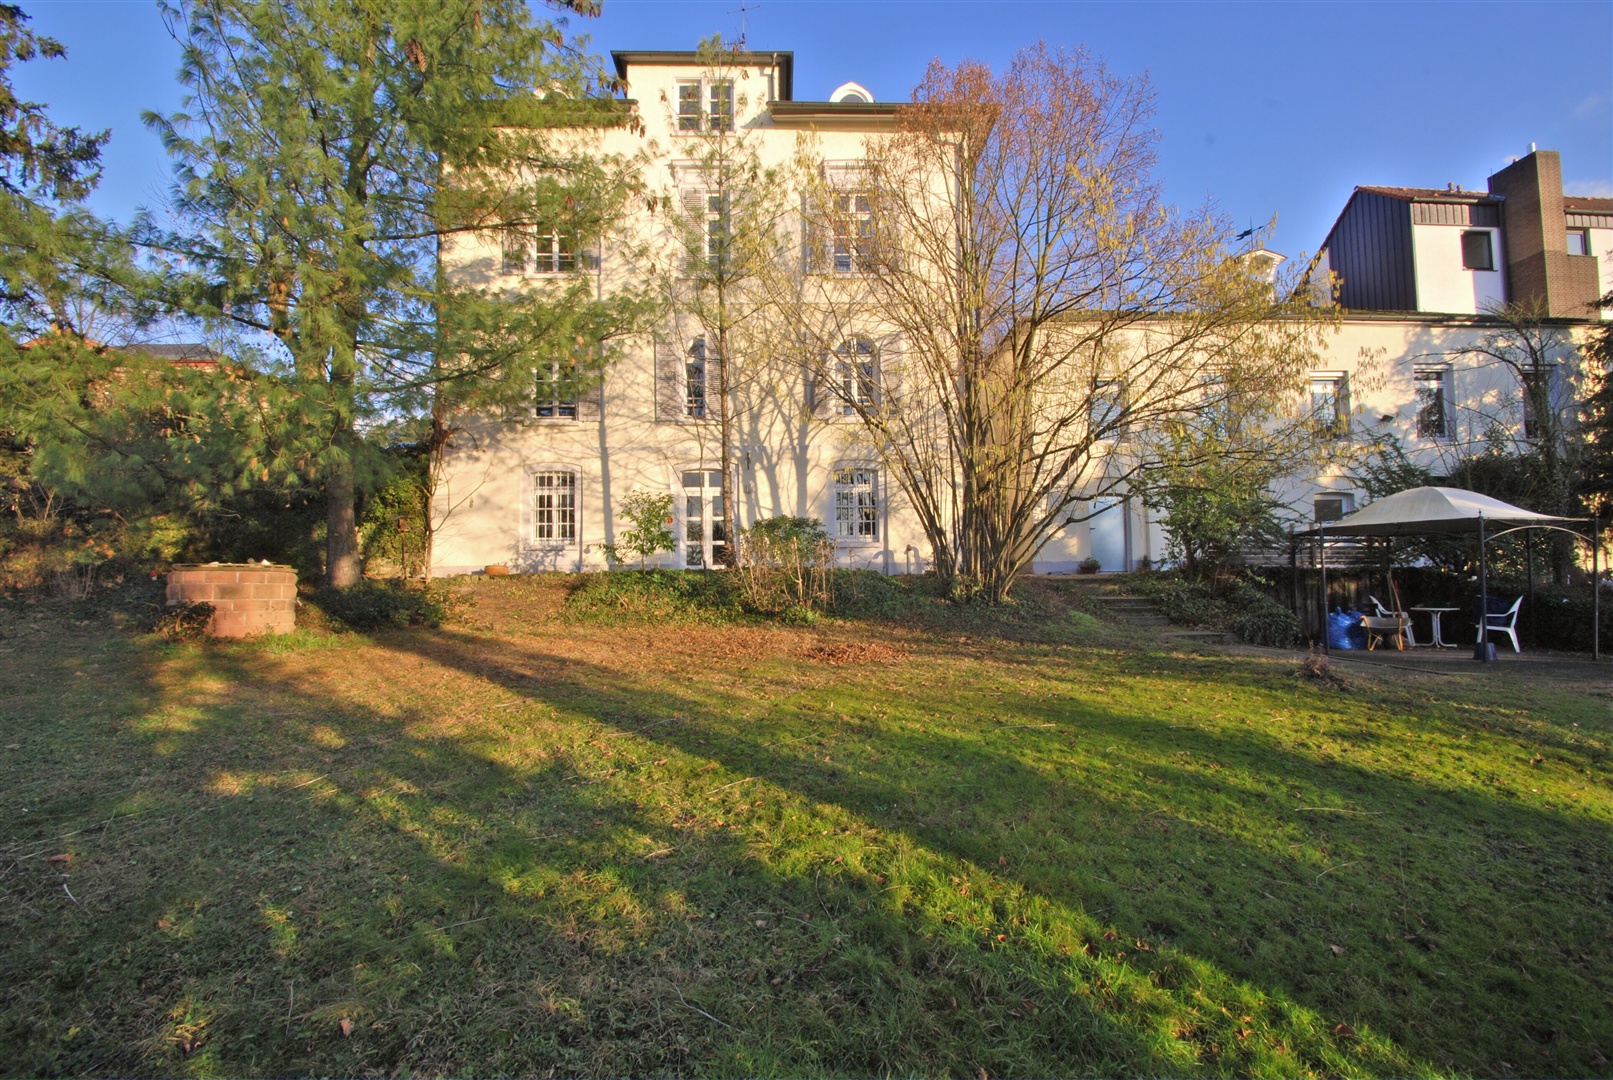 westfassade der villa mit einem weiteren baugrundstück mit eigener zufahrt - Oliver Reifferscheid - Immobilienmakler Darmstadt